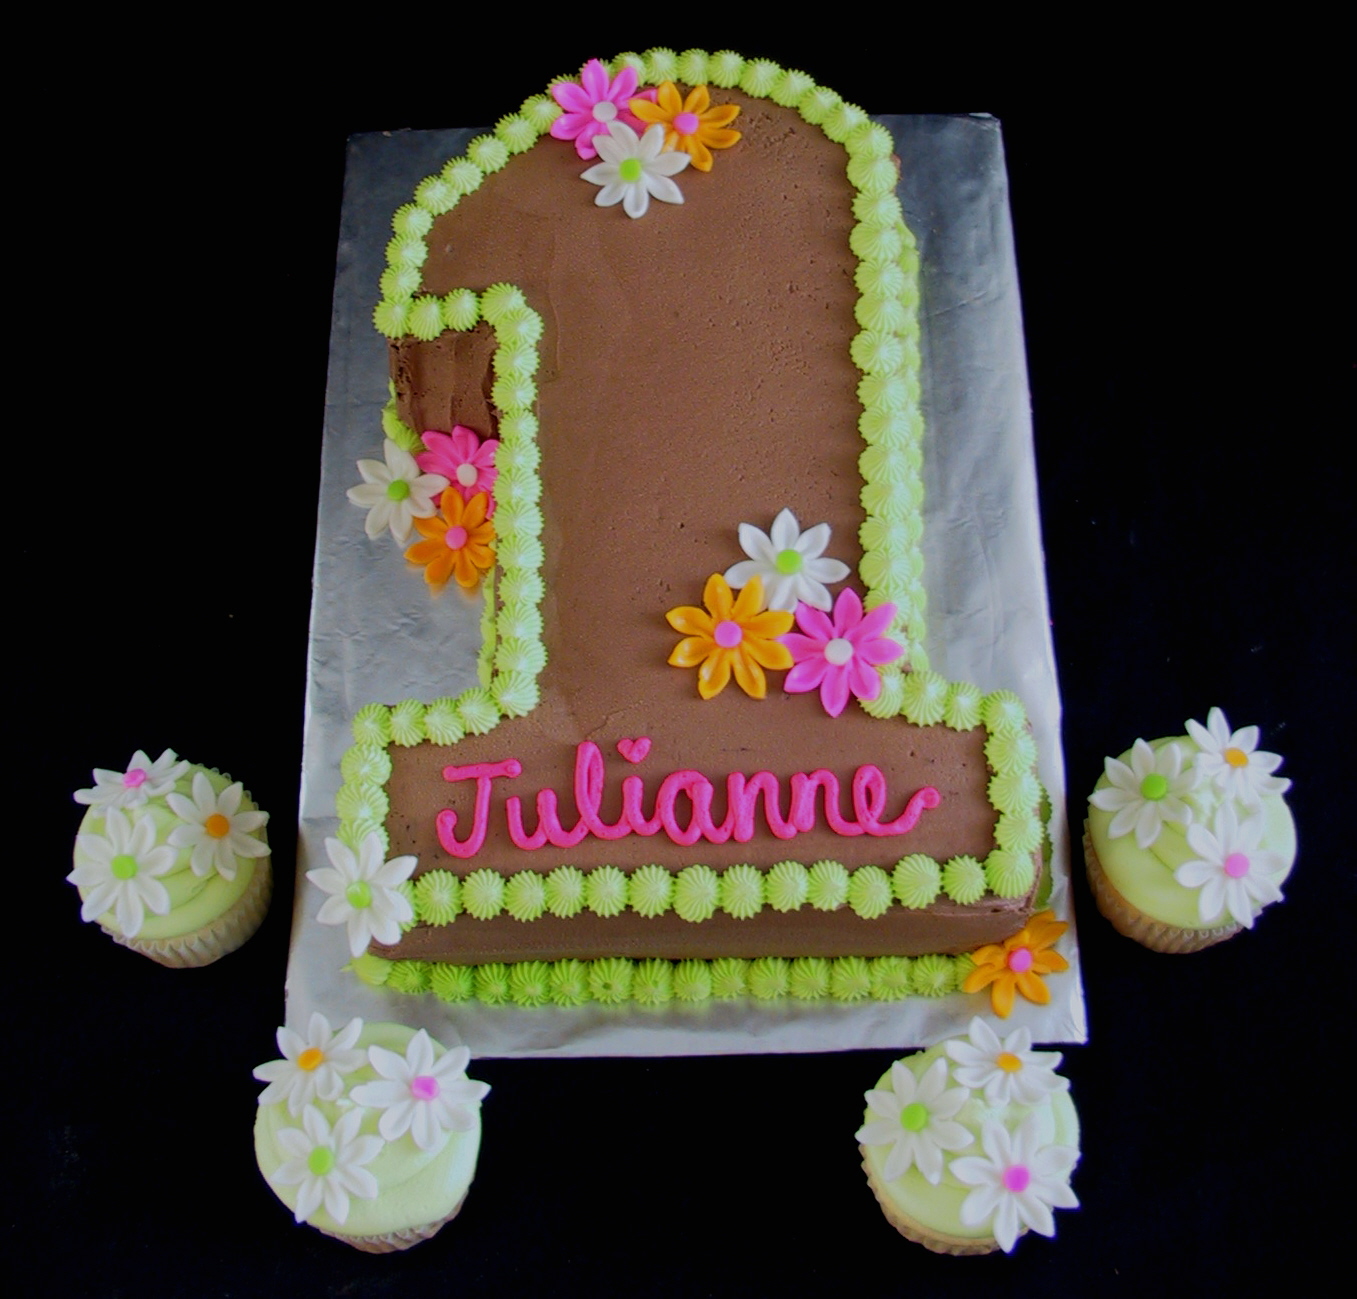 1st Birthday Cake Images For Girls